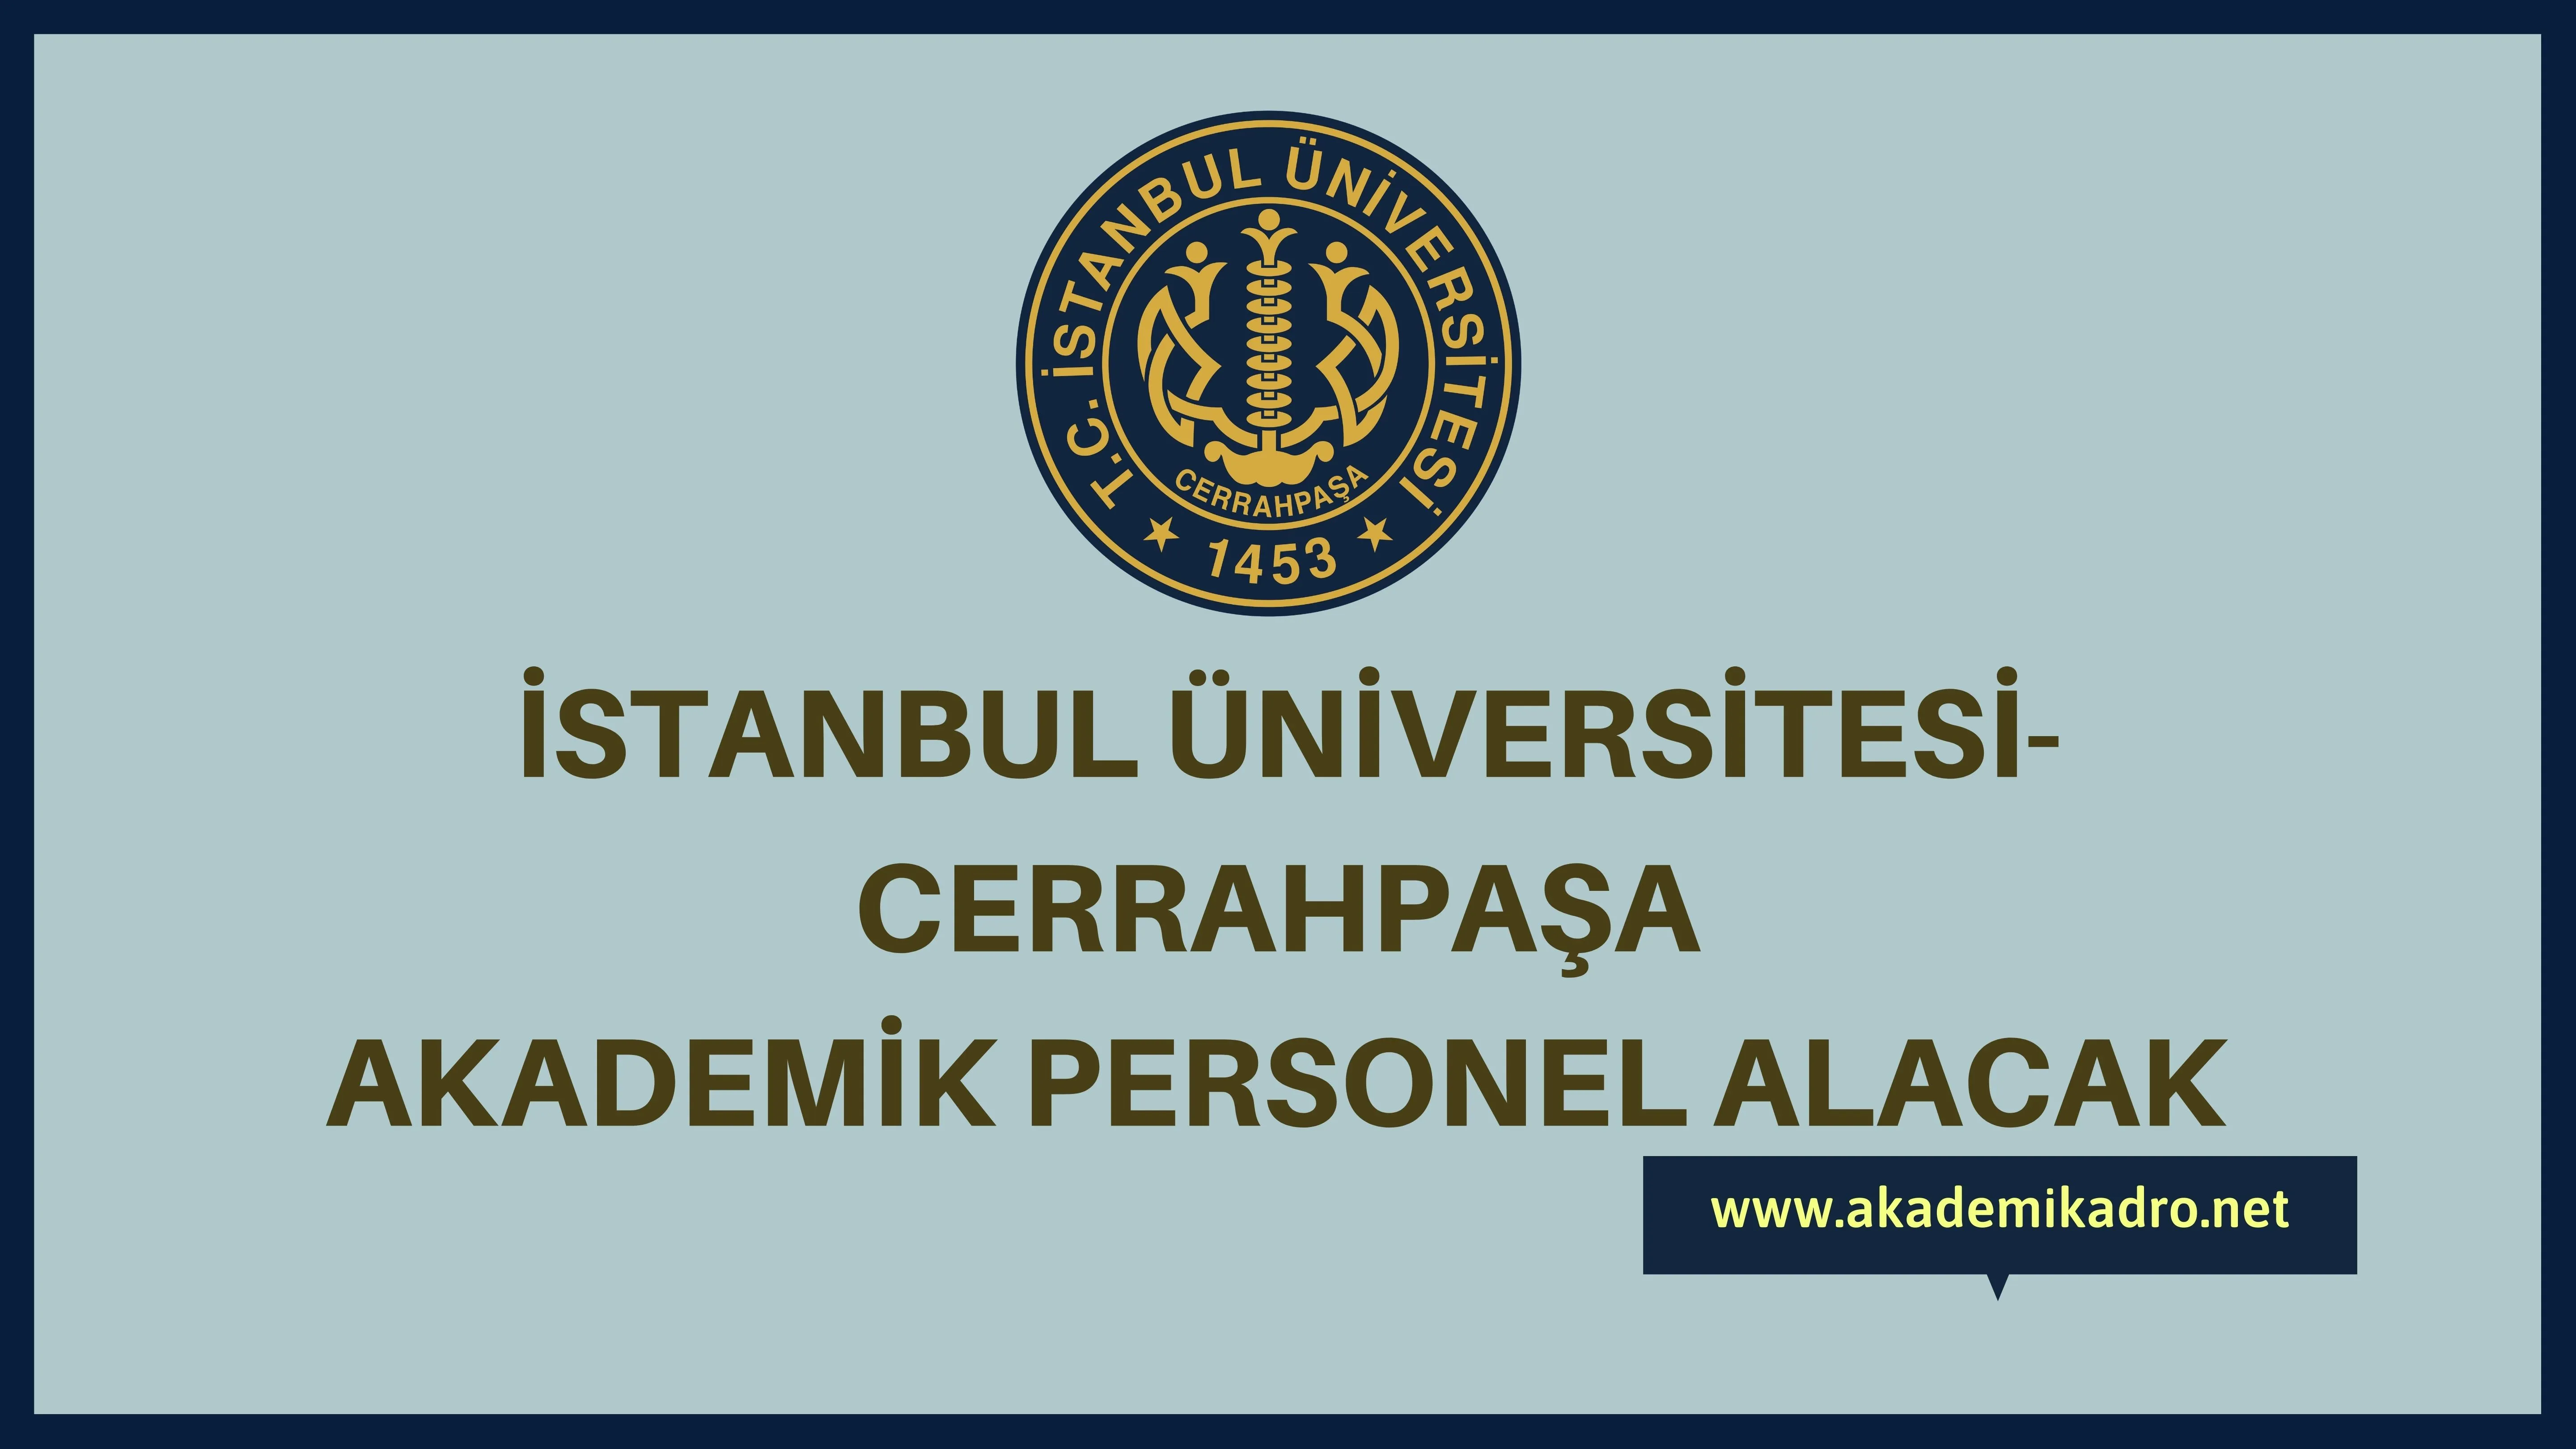 İstanbul Üniversitesi-Cerrahpaşa birçok alandan 79 akademik personel alacak. Son başvuru tarihi 07 Kasım 2022.